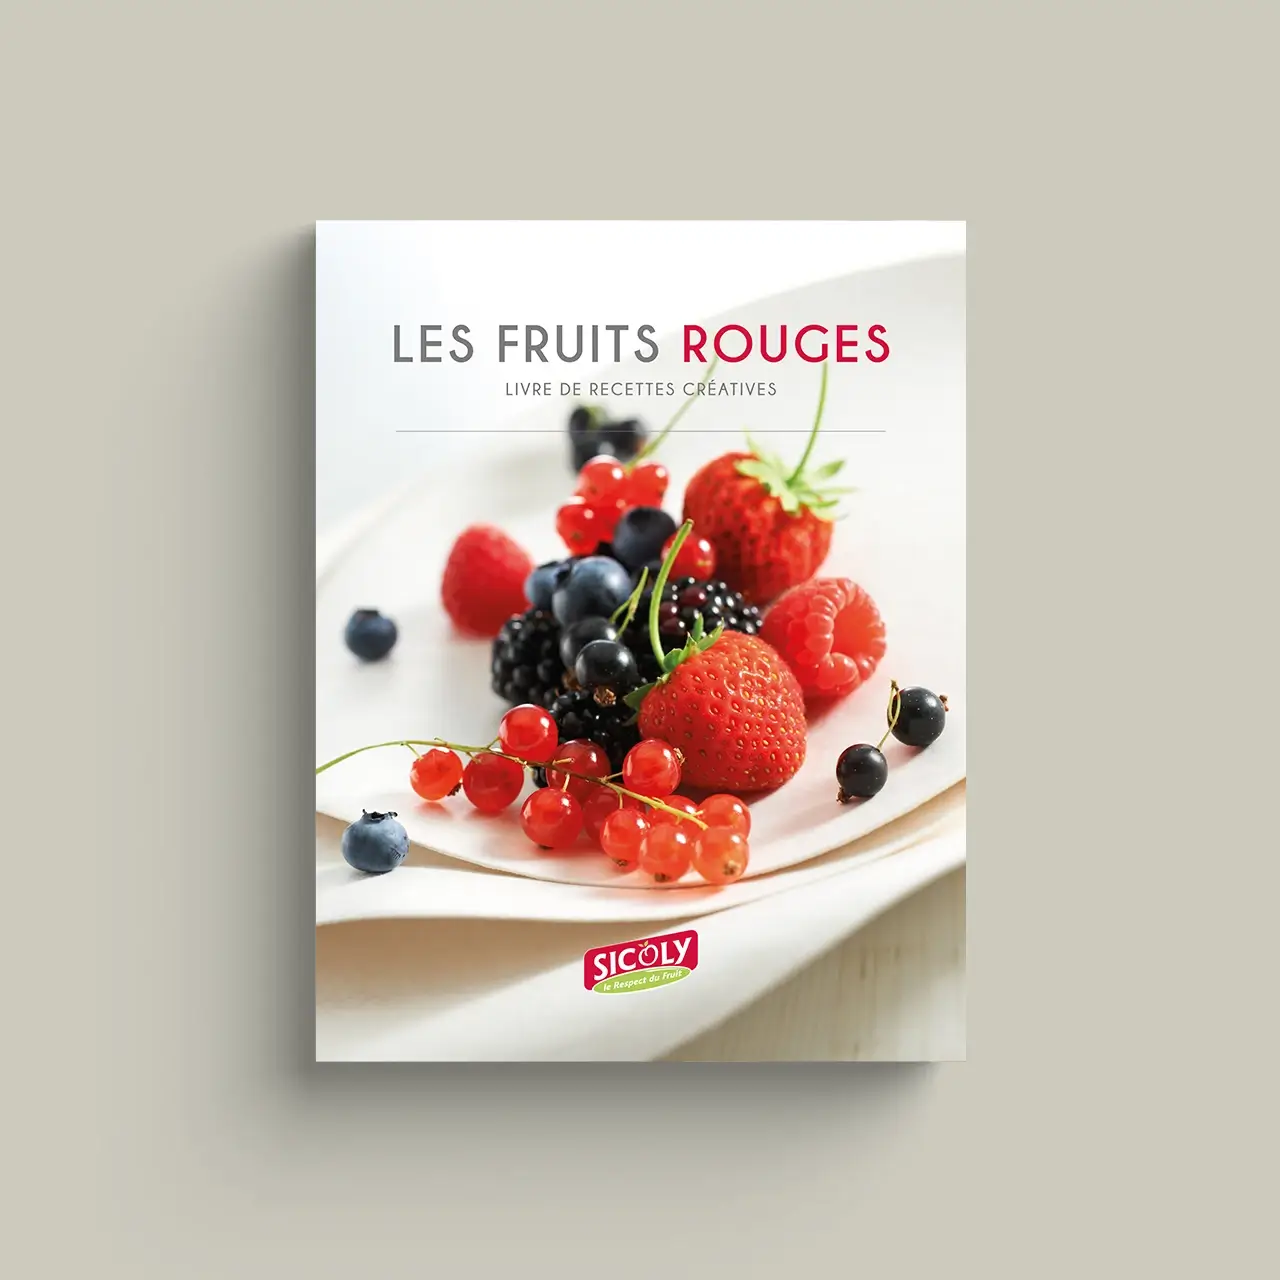 Les Fruits Rouges - Livre de recettes créatives par Sicoly, coopérative, producteur de fruits frais, fournisseur de purées surgelées et fruits transformés